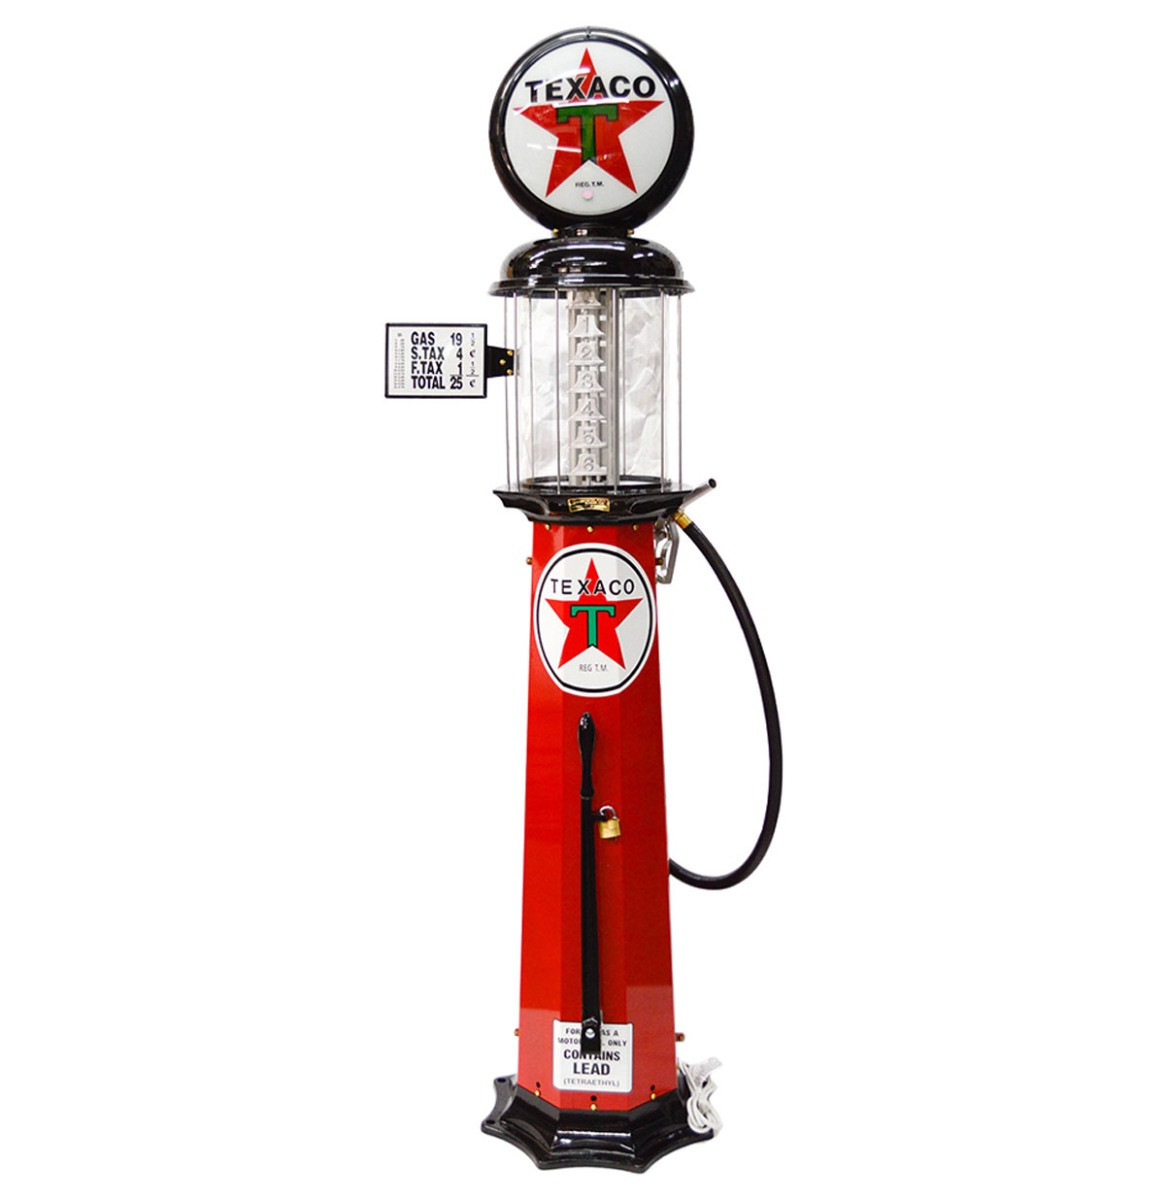 American Texaco 6 Gallon Benzinepomp - Rood & Zwart - Reproductie